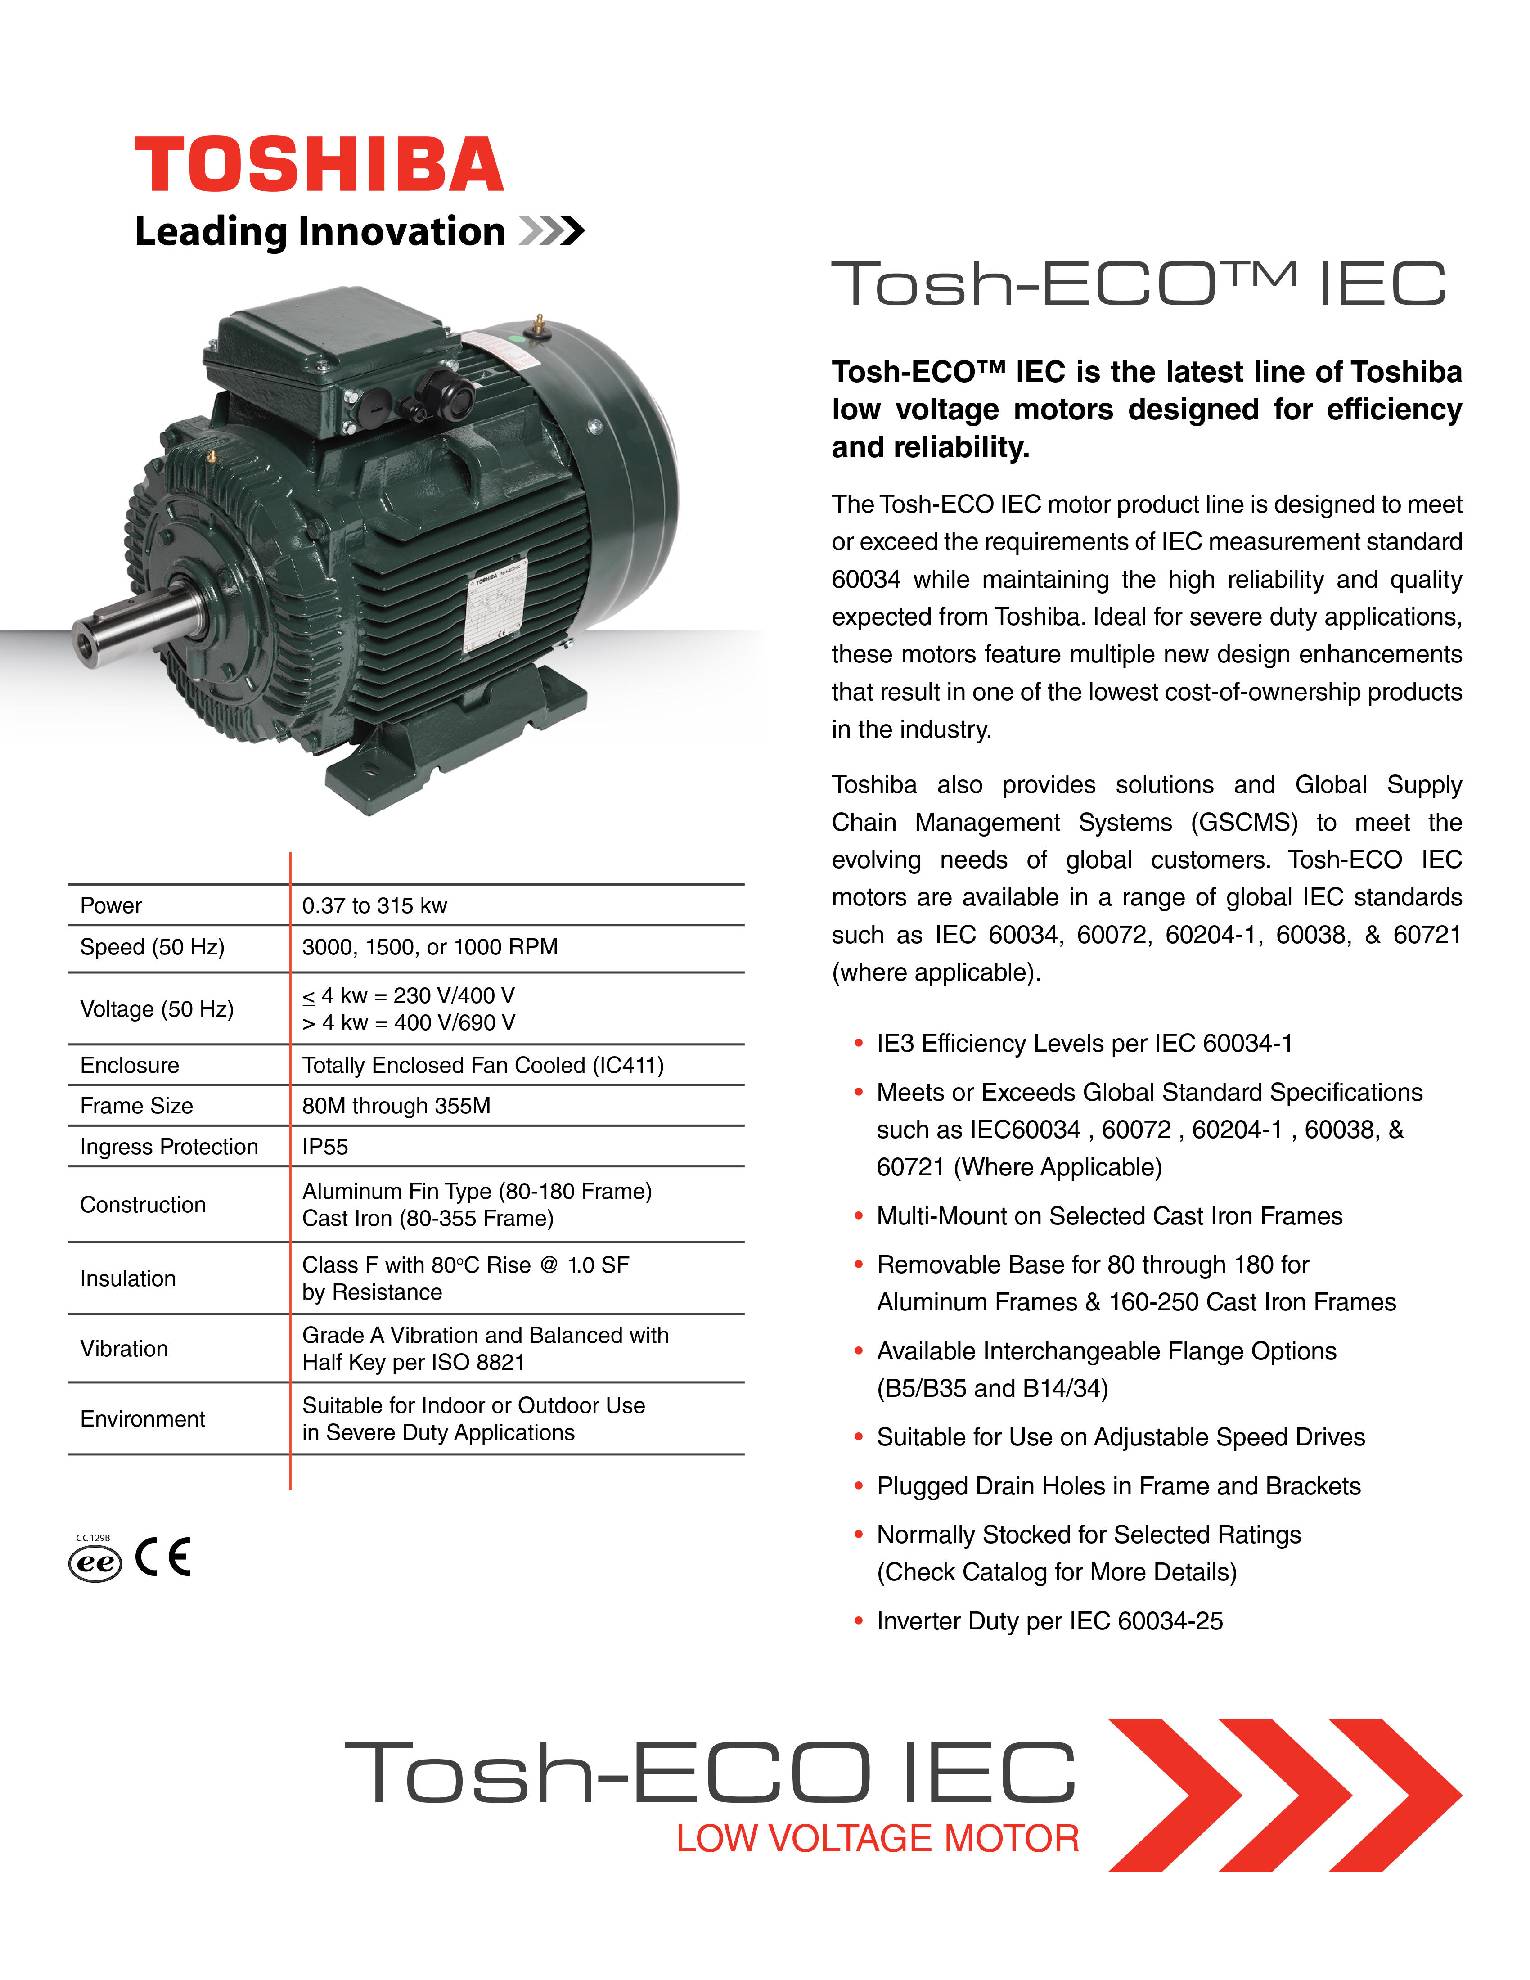 Синхронные электродвигатели Toshiba с полностью закрытым вентилятором и верхней коробкой клемм TEFC Tosh-ECO™ IEC Permanent Magnet Motor 